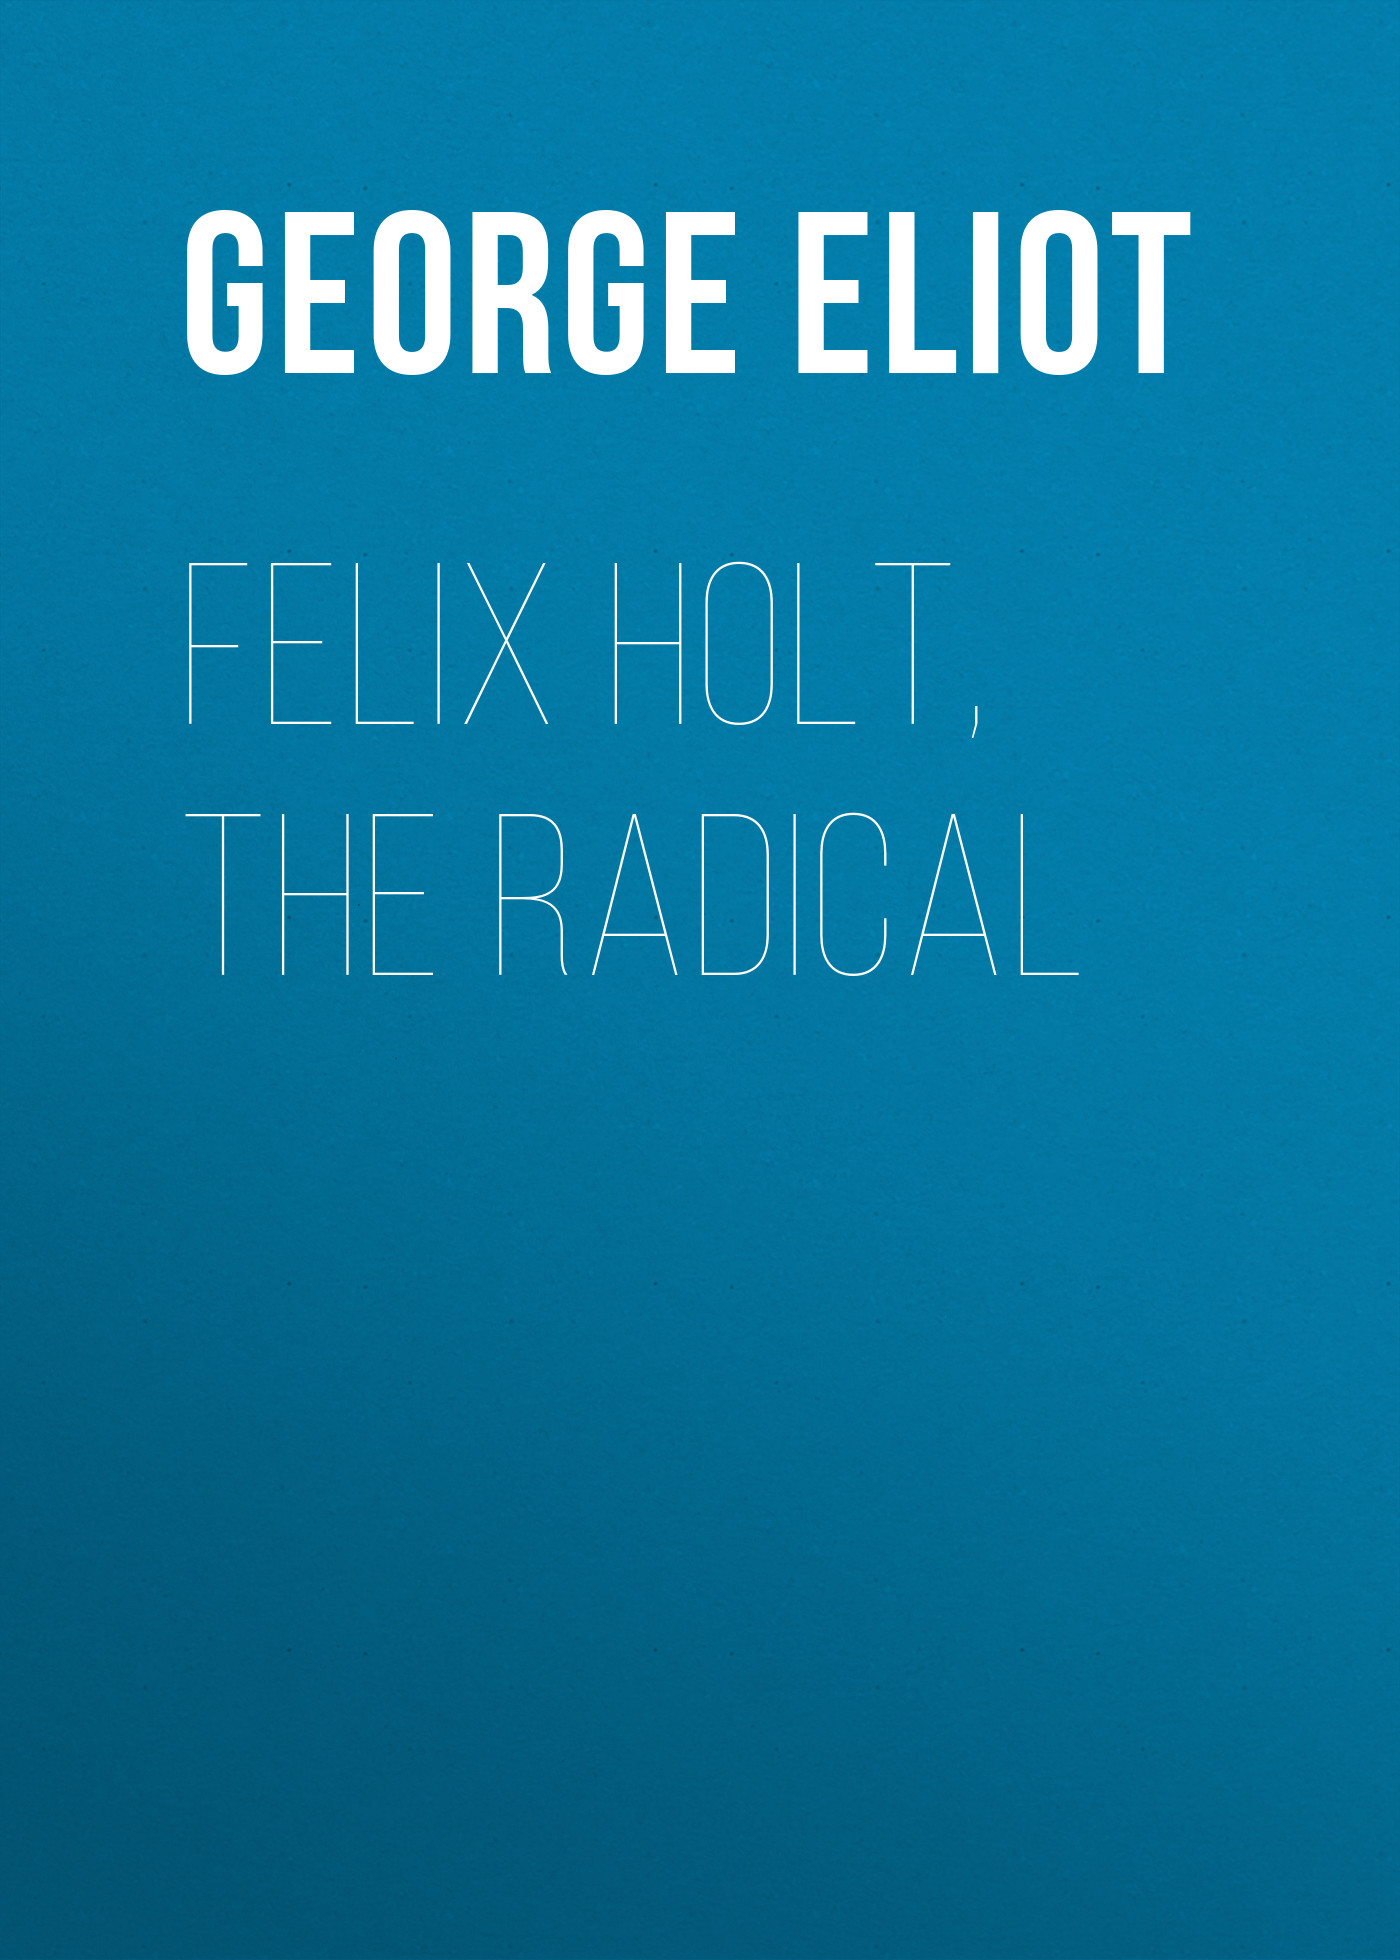 Книга Felix Holt, the Radical из серии , созданная George Eliot, может относится к жанру Зарубежная старинная литература, Зарубежная классика. Стоимость электронной книги Felix Holt, the Radical с идентификатором 24713417 составляет 0 руб.